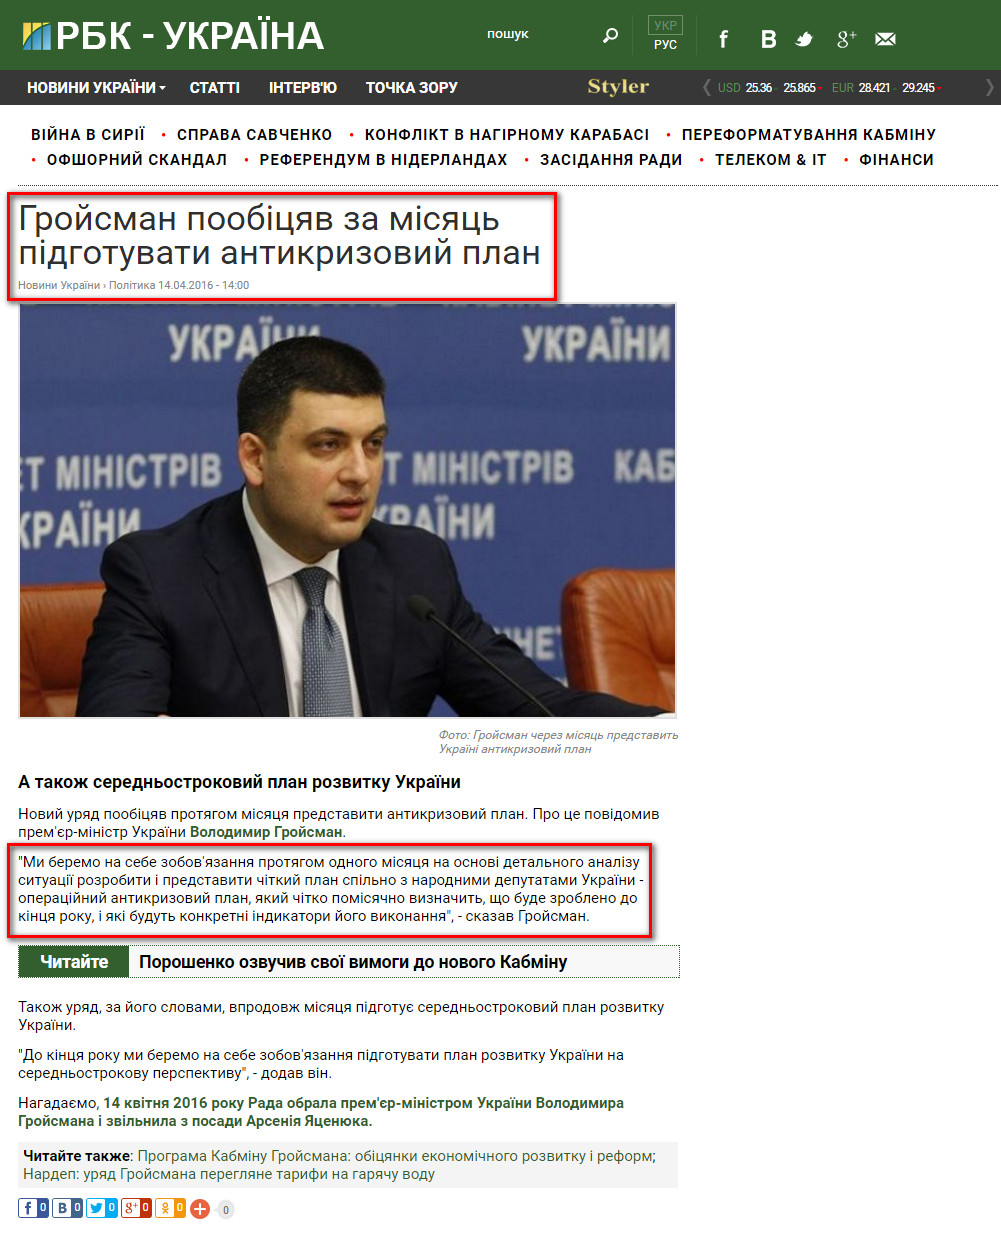 https://www.rbc.ua/ukr/news/groysman-poobeshchal-mesyats-podgotovit-antikrizisnyy-1460631579.html